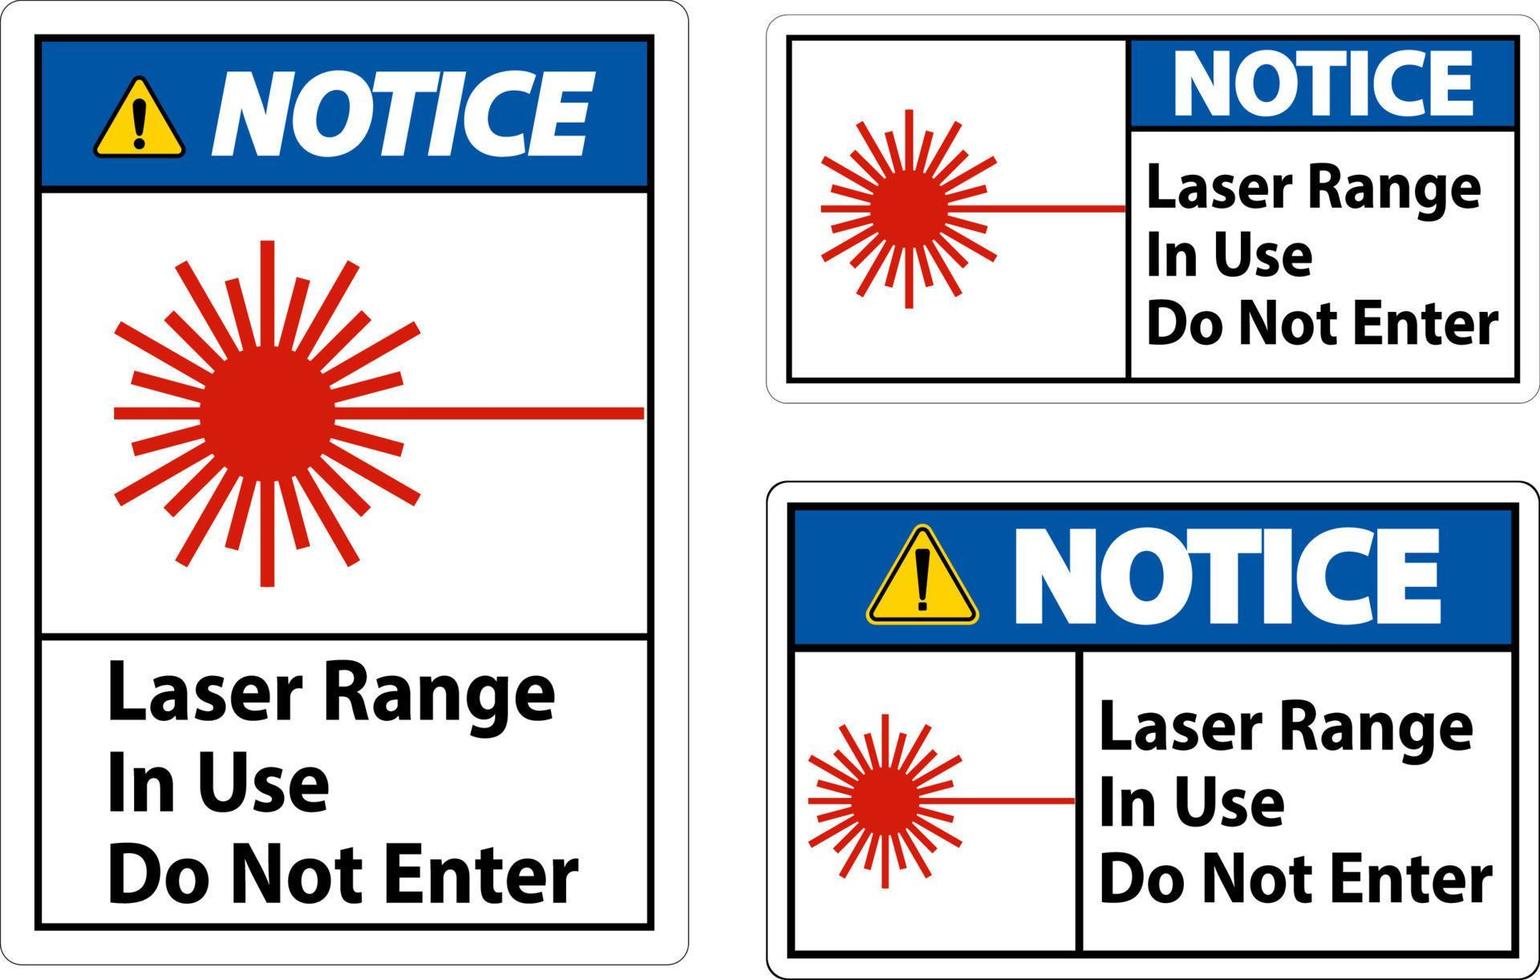 Avviso laser gamma nel uso fare non accedere cartello vettore